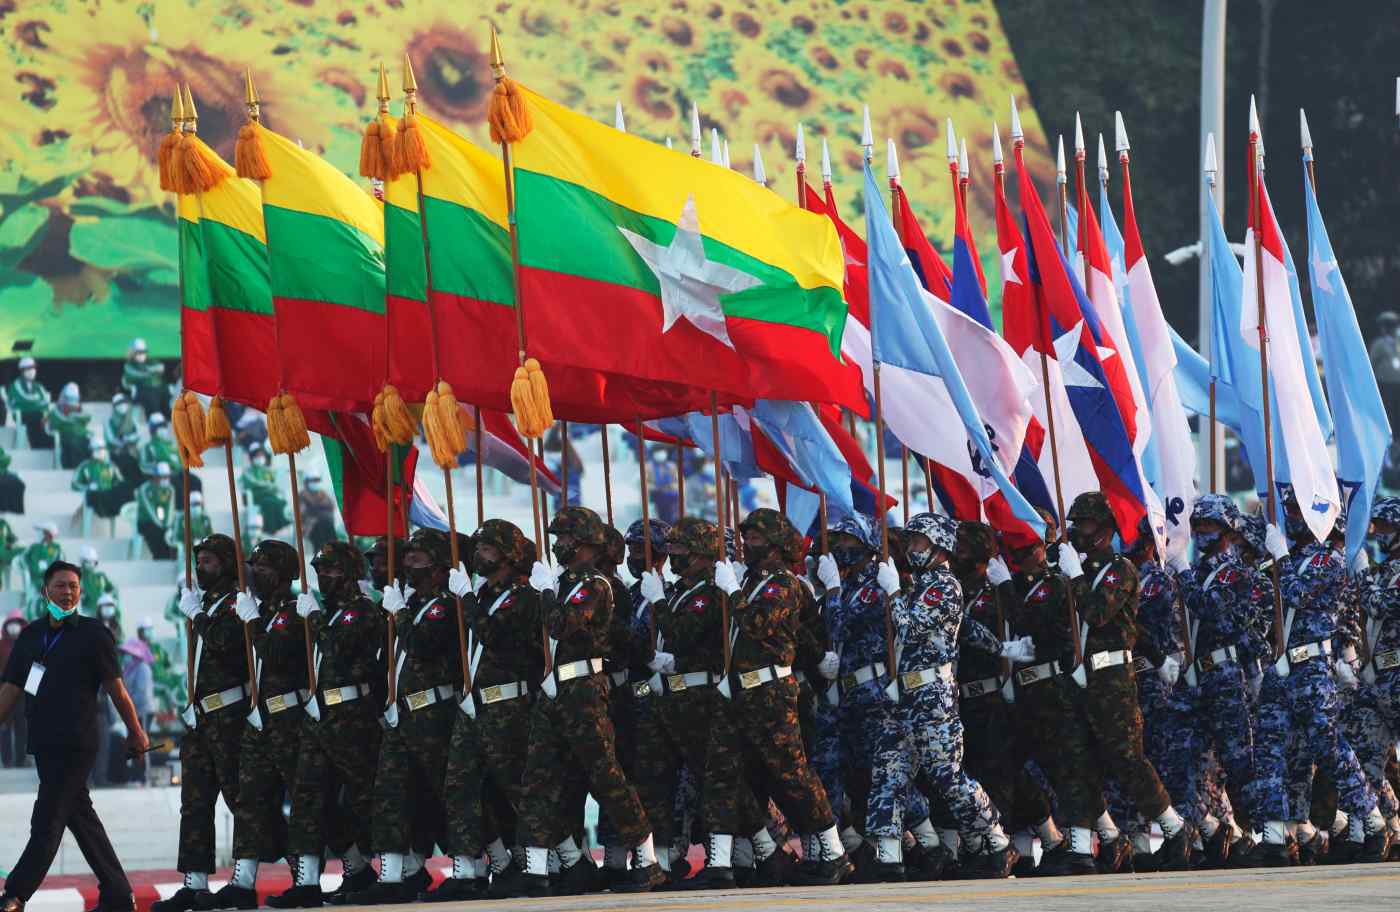 Myanmar đã tổ chức lễ Quốc khánh lớn nhất trong lịch sử nước này với sự tham gia của hàng triệu người dân. Hình ảnh đầy ấn tượng và sinh động của chiến thắng độc lập và sự tung hoành của Myanmar trong thời gian qua sẽ khiến bạn cảm thấy cuốn hút và thật sự tự hào về dân tộc Myanmar.